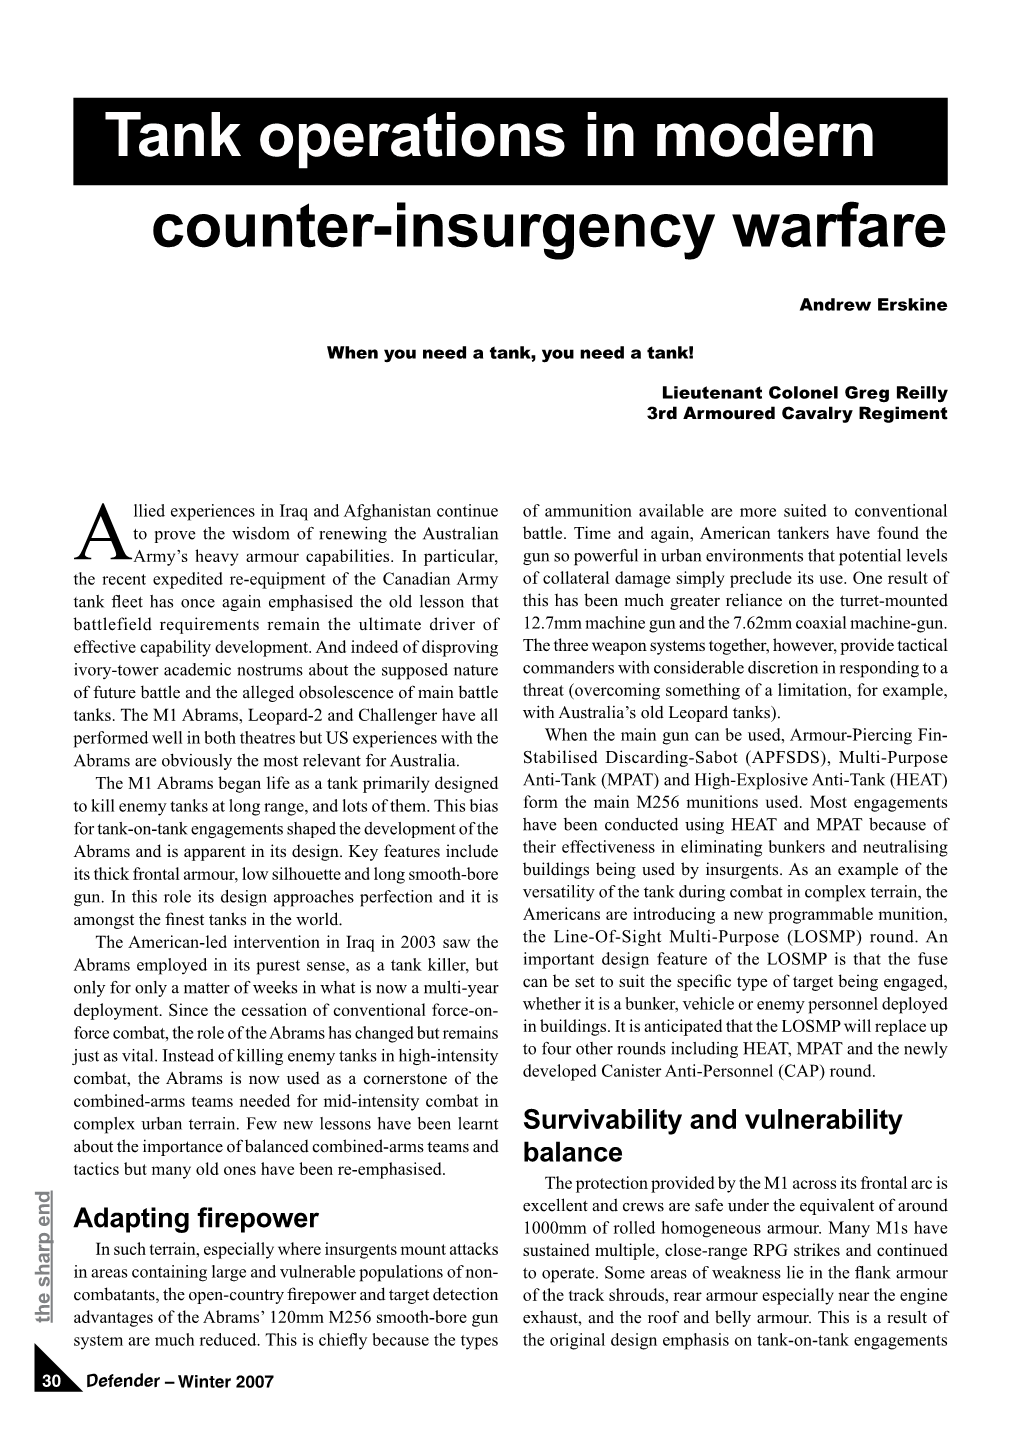 Tank Operations in Modern Counter-Insurgency Warfare